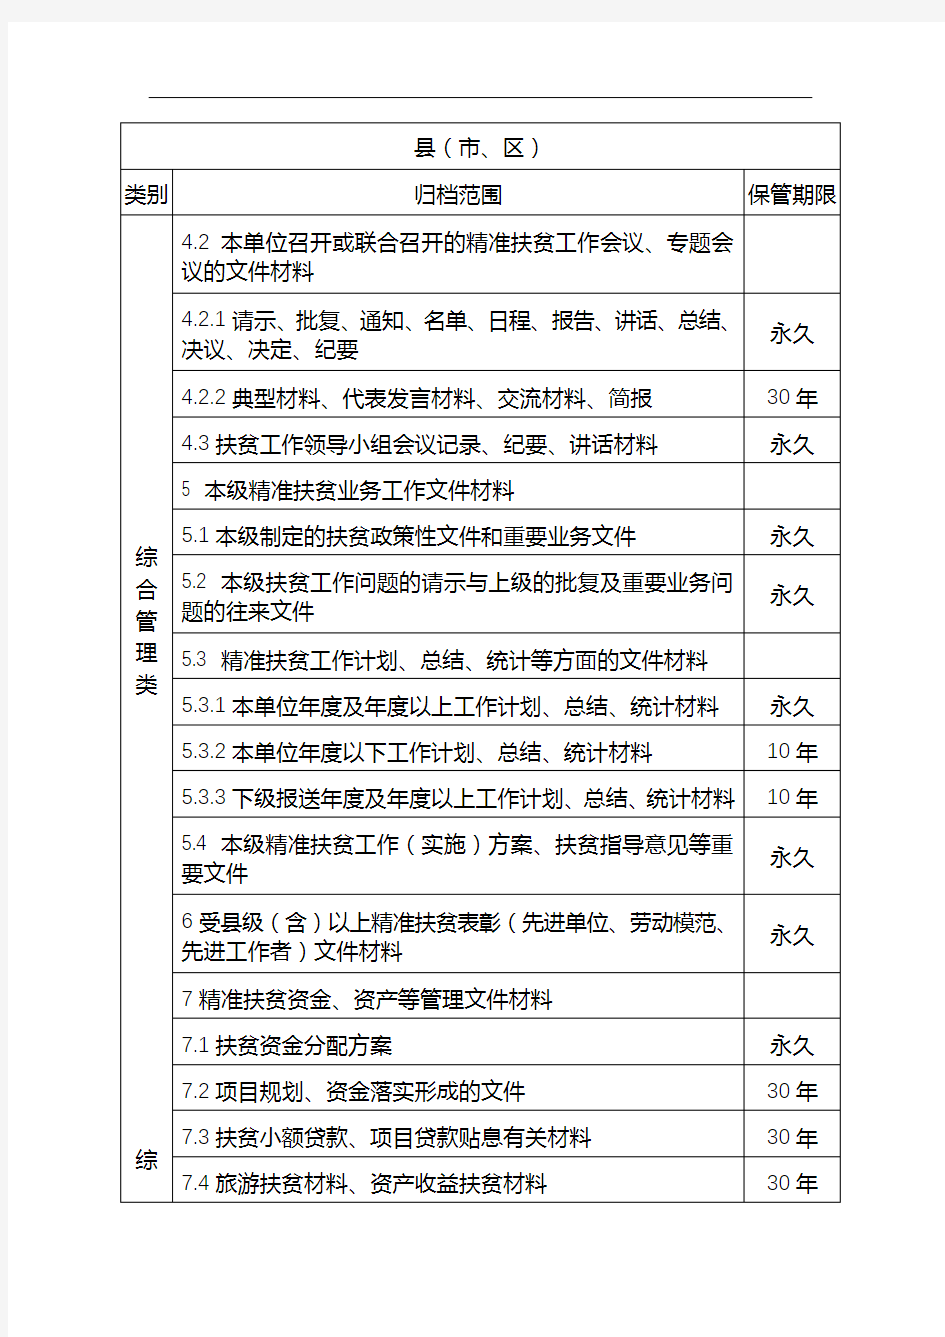 广西壮族自治区精准扶贫文件材料归档范围和档案保管期限表【模板】